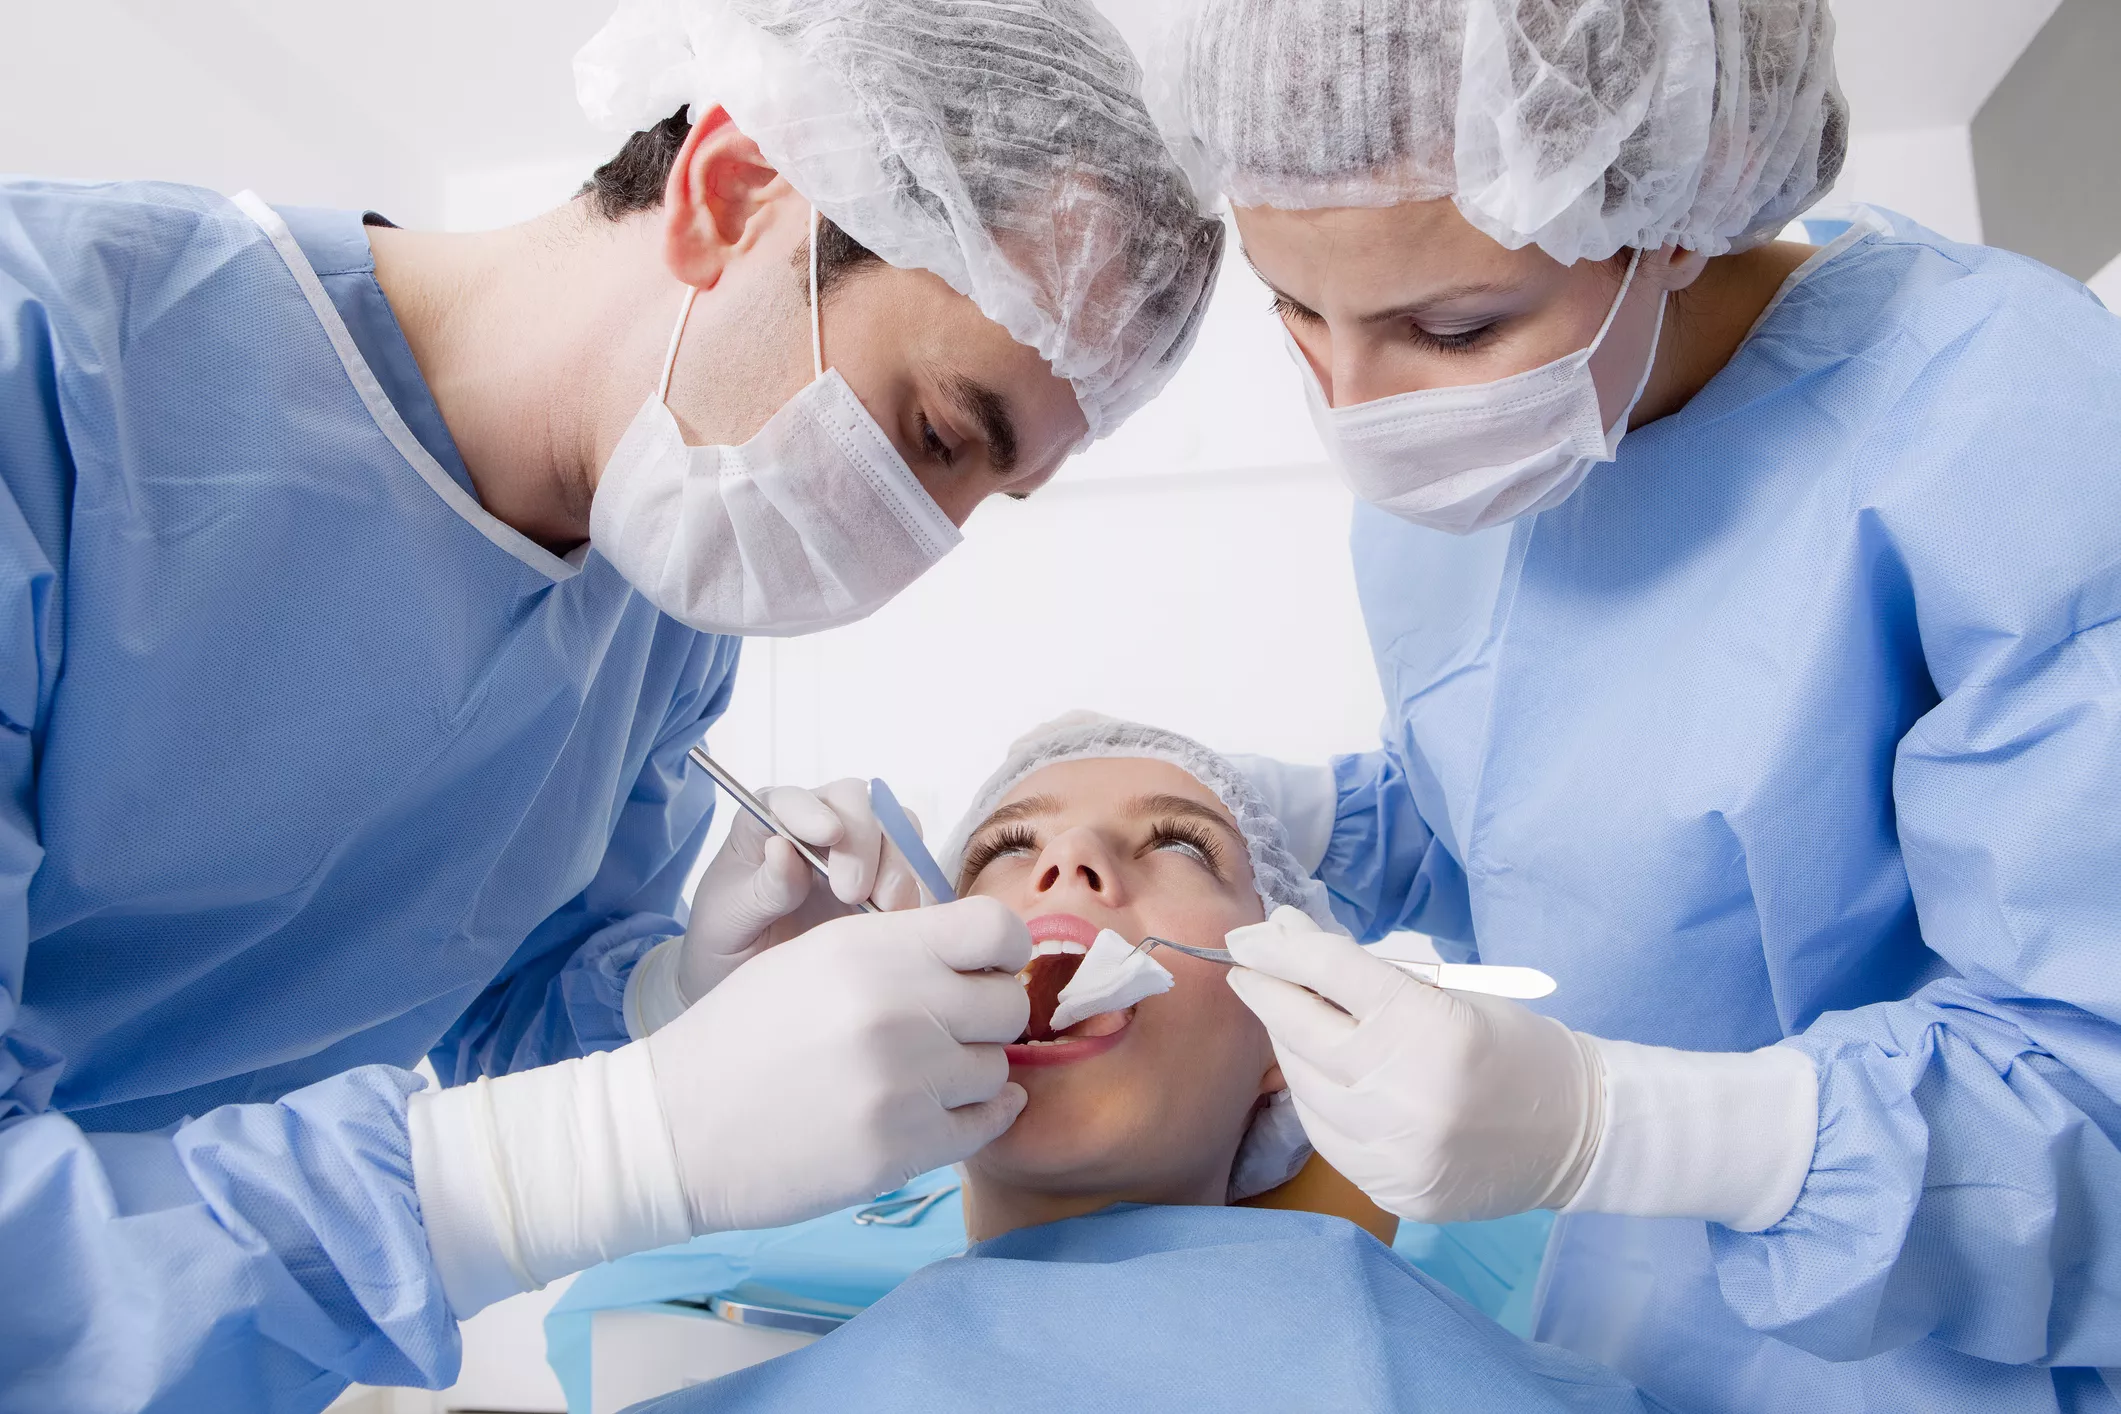 ekstrakcja zęba u stomatologa